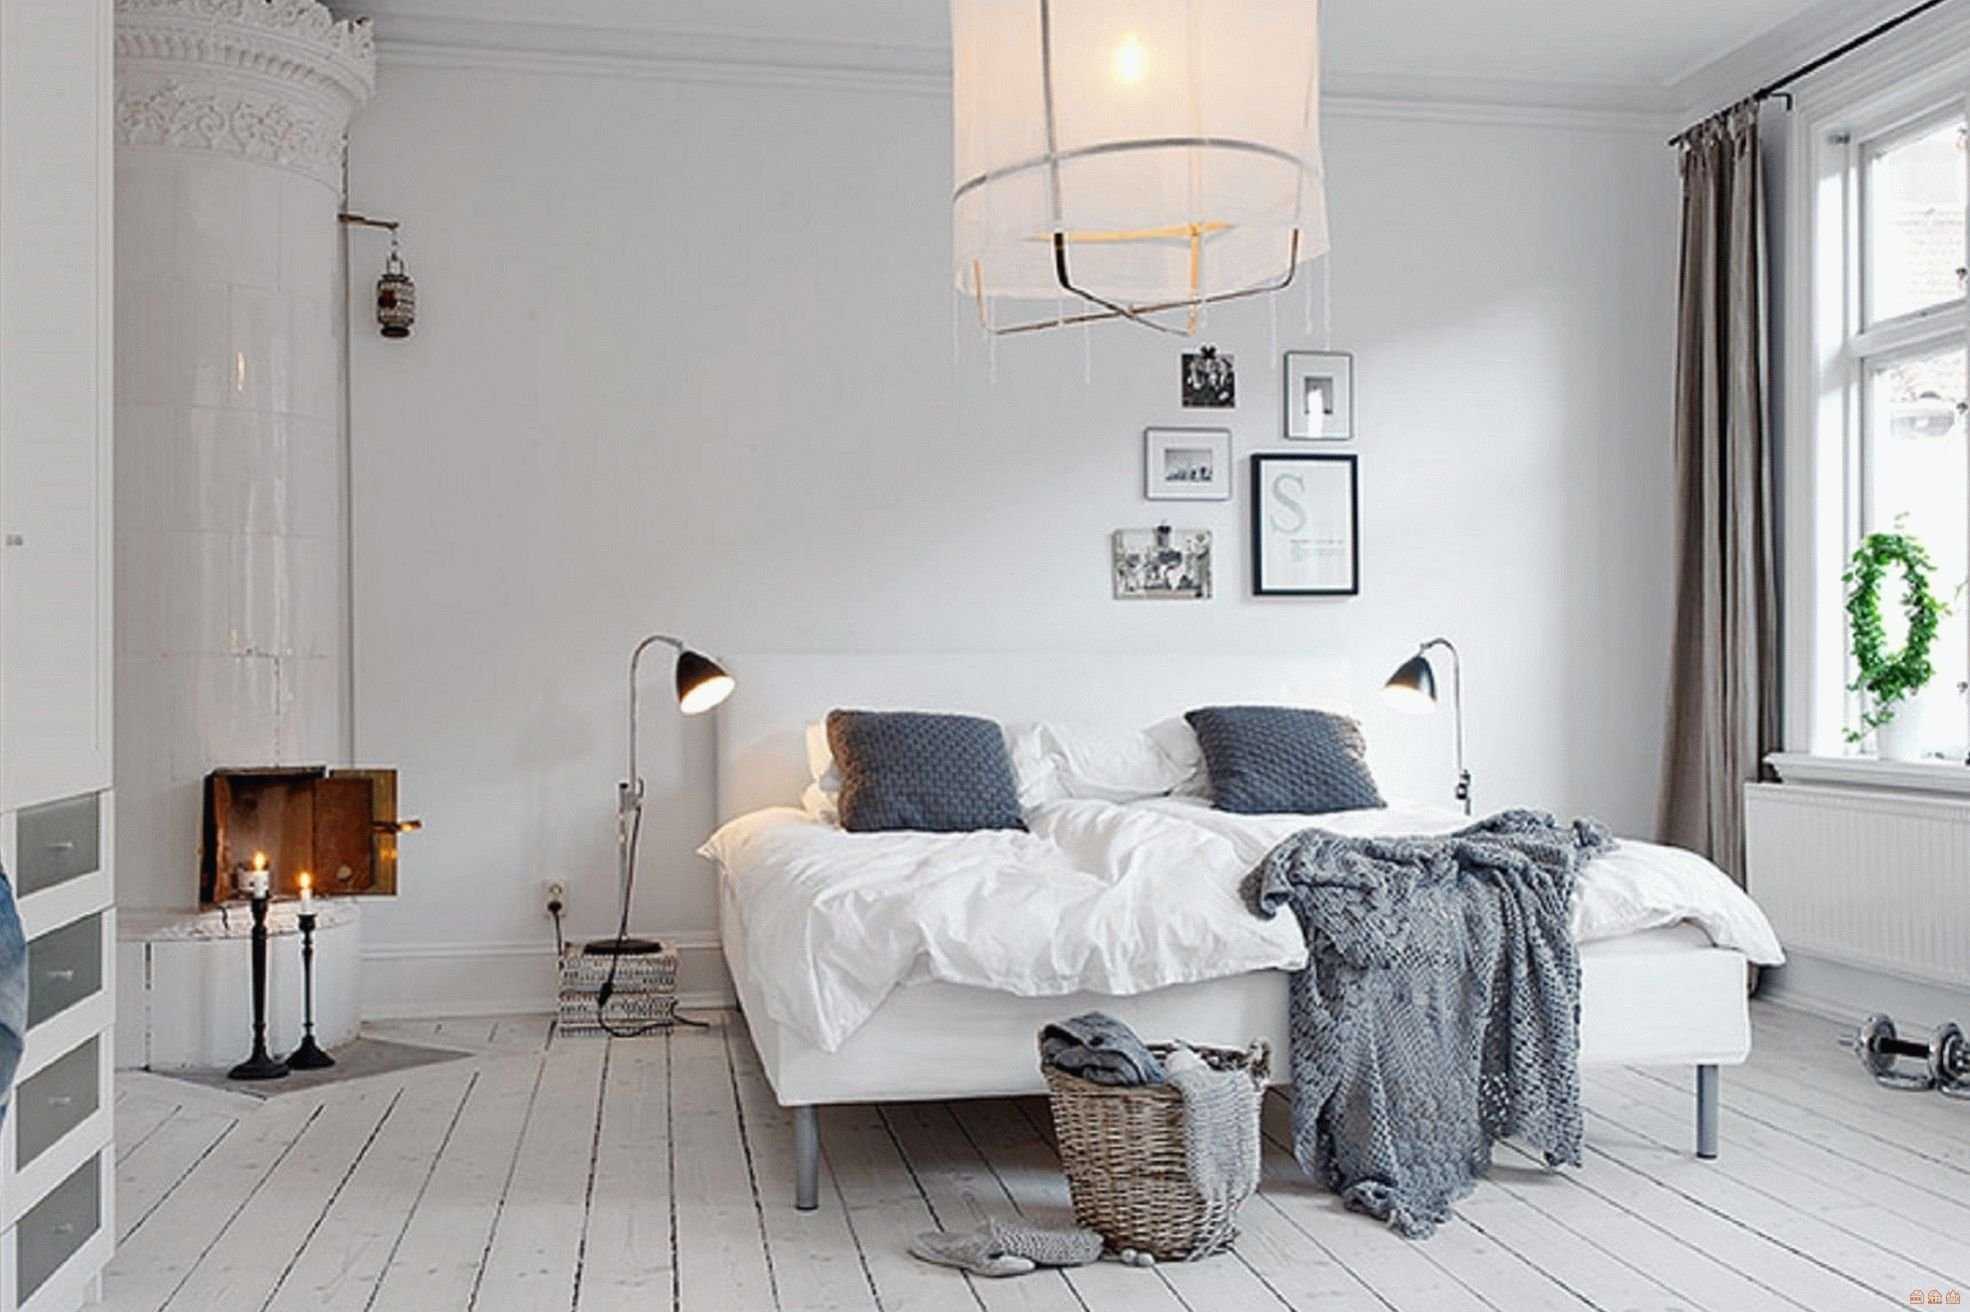 Спальня в скандинавском стиле – это, пожалуй, одна из самых трендовых и популярных тенденций в сфере дизайна интерьера на сегодняшний день